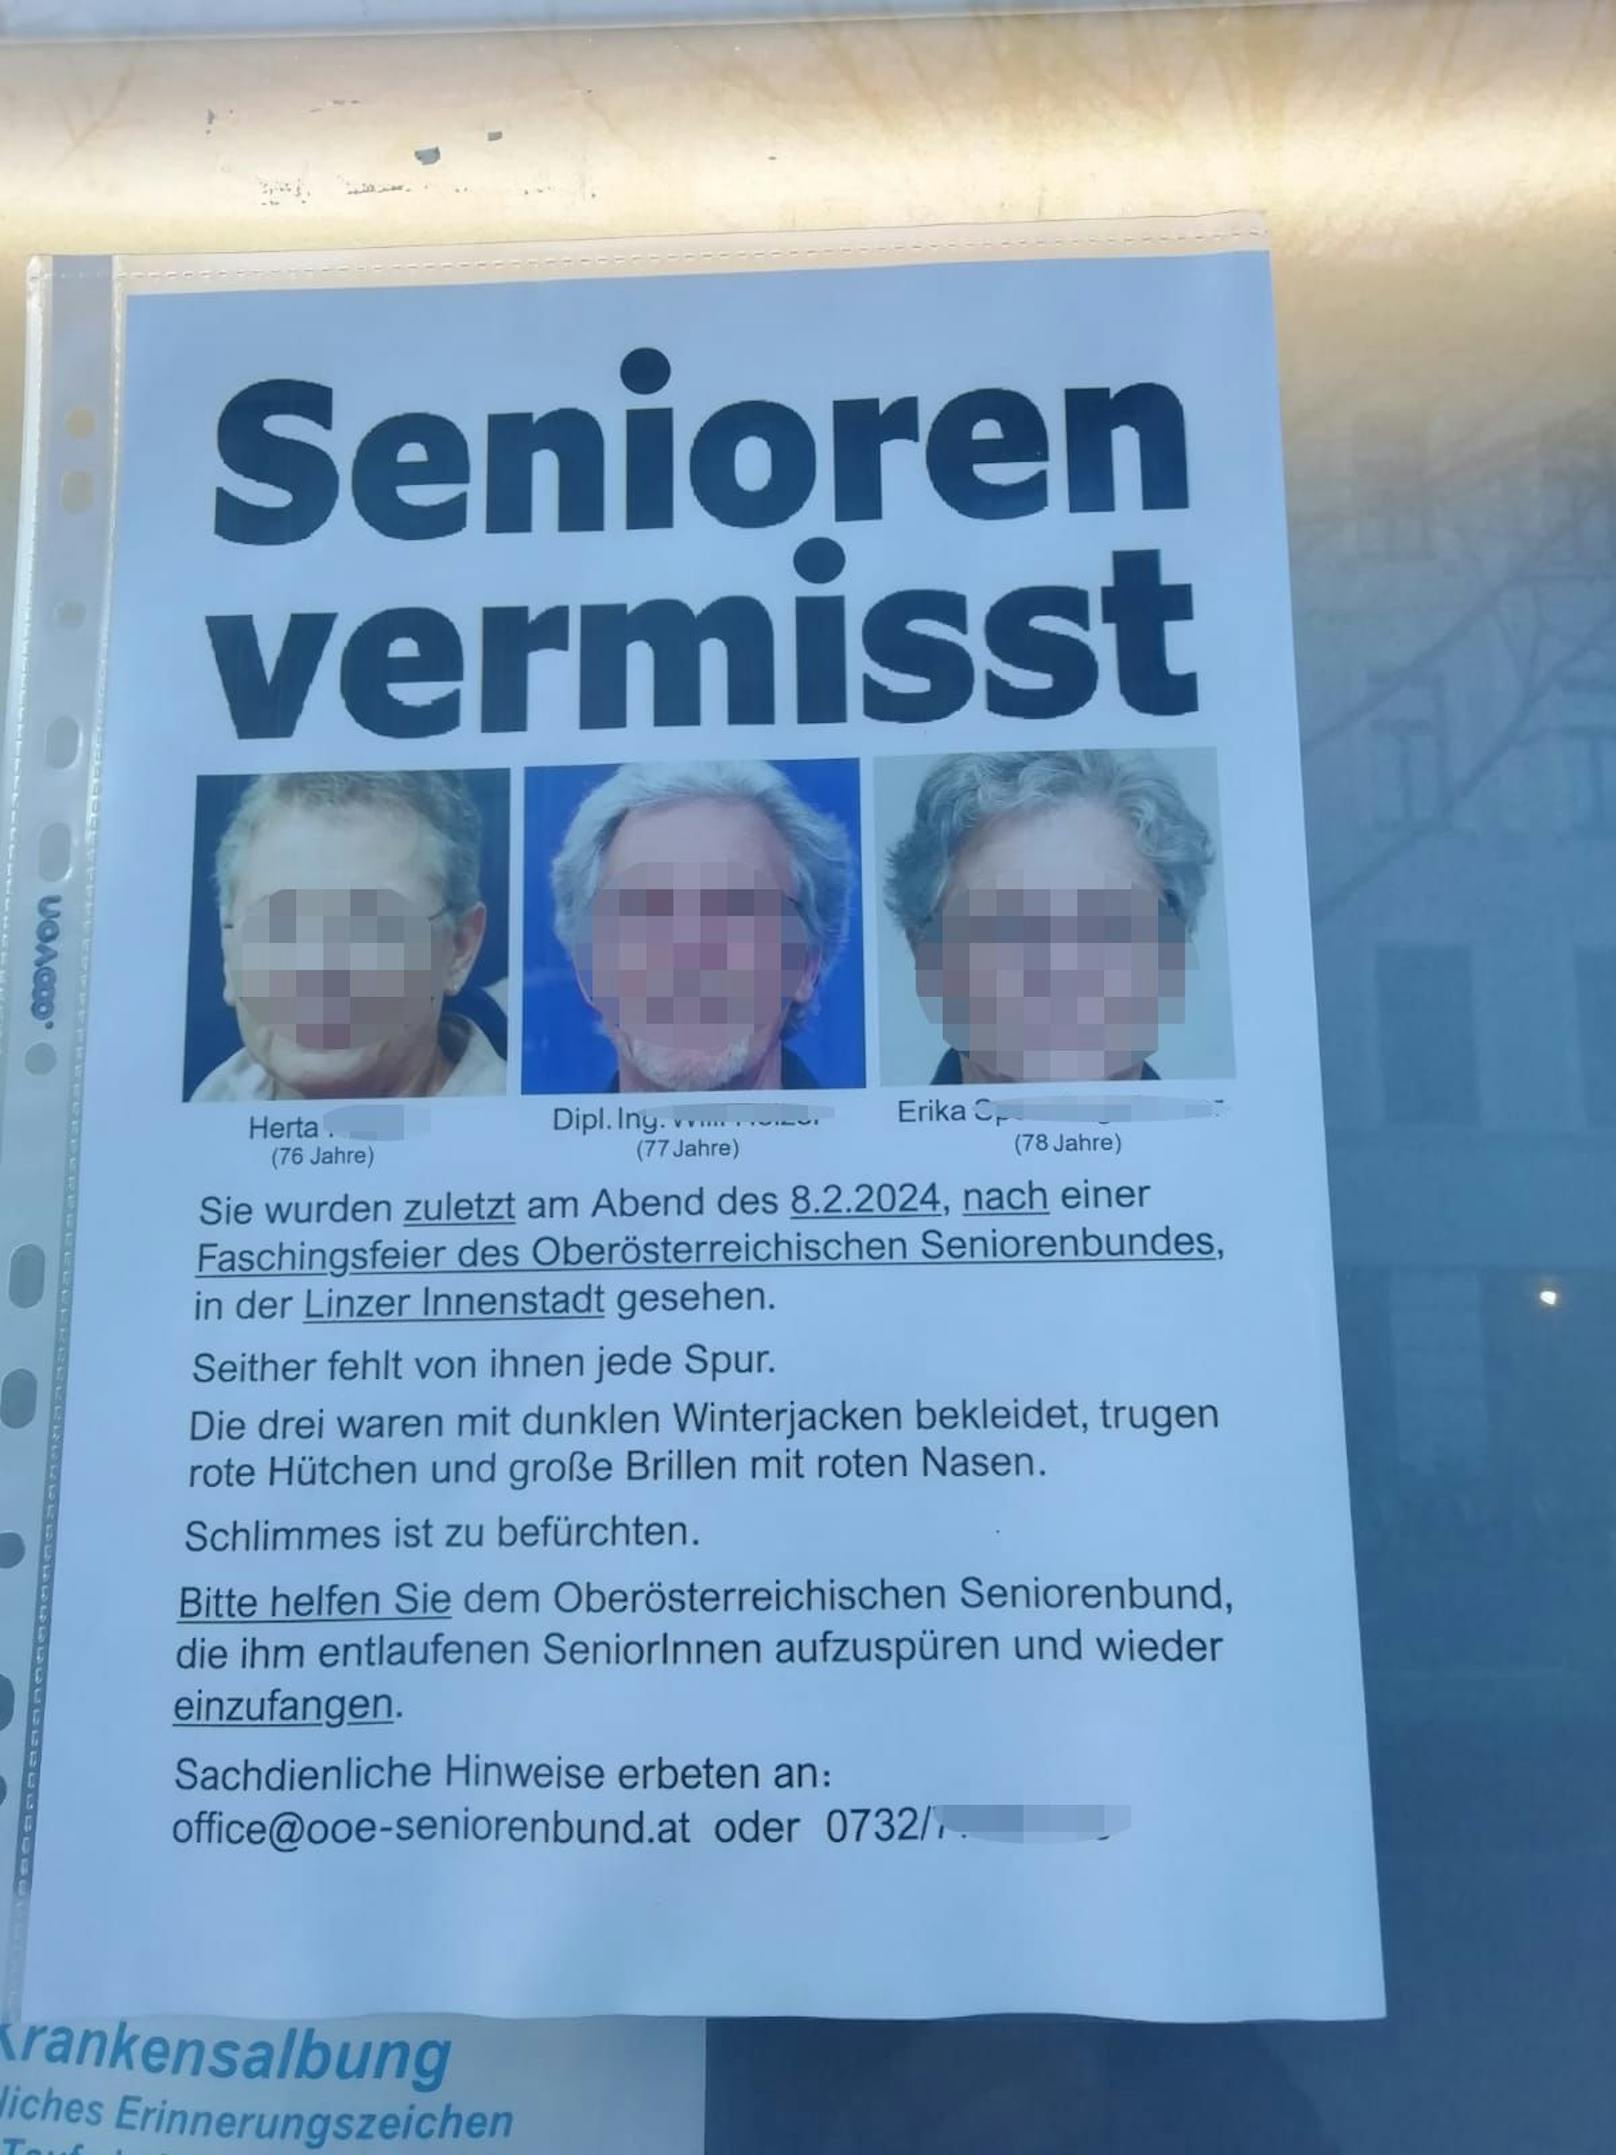 Darunter sind drei ältere Menschen – zwei Frauen, ein Mann – mit Namen und Alter abgebildet. Weiters zu lesen: "Sie wurden zuletzt am Abend des 8.2.2004, nach einer Faschingsfeier des Oberösterreichischen Seniorenbundes, in der Linzer Innenstadt gesehen."